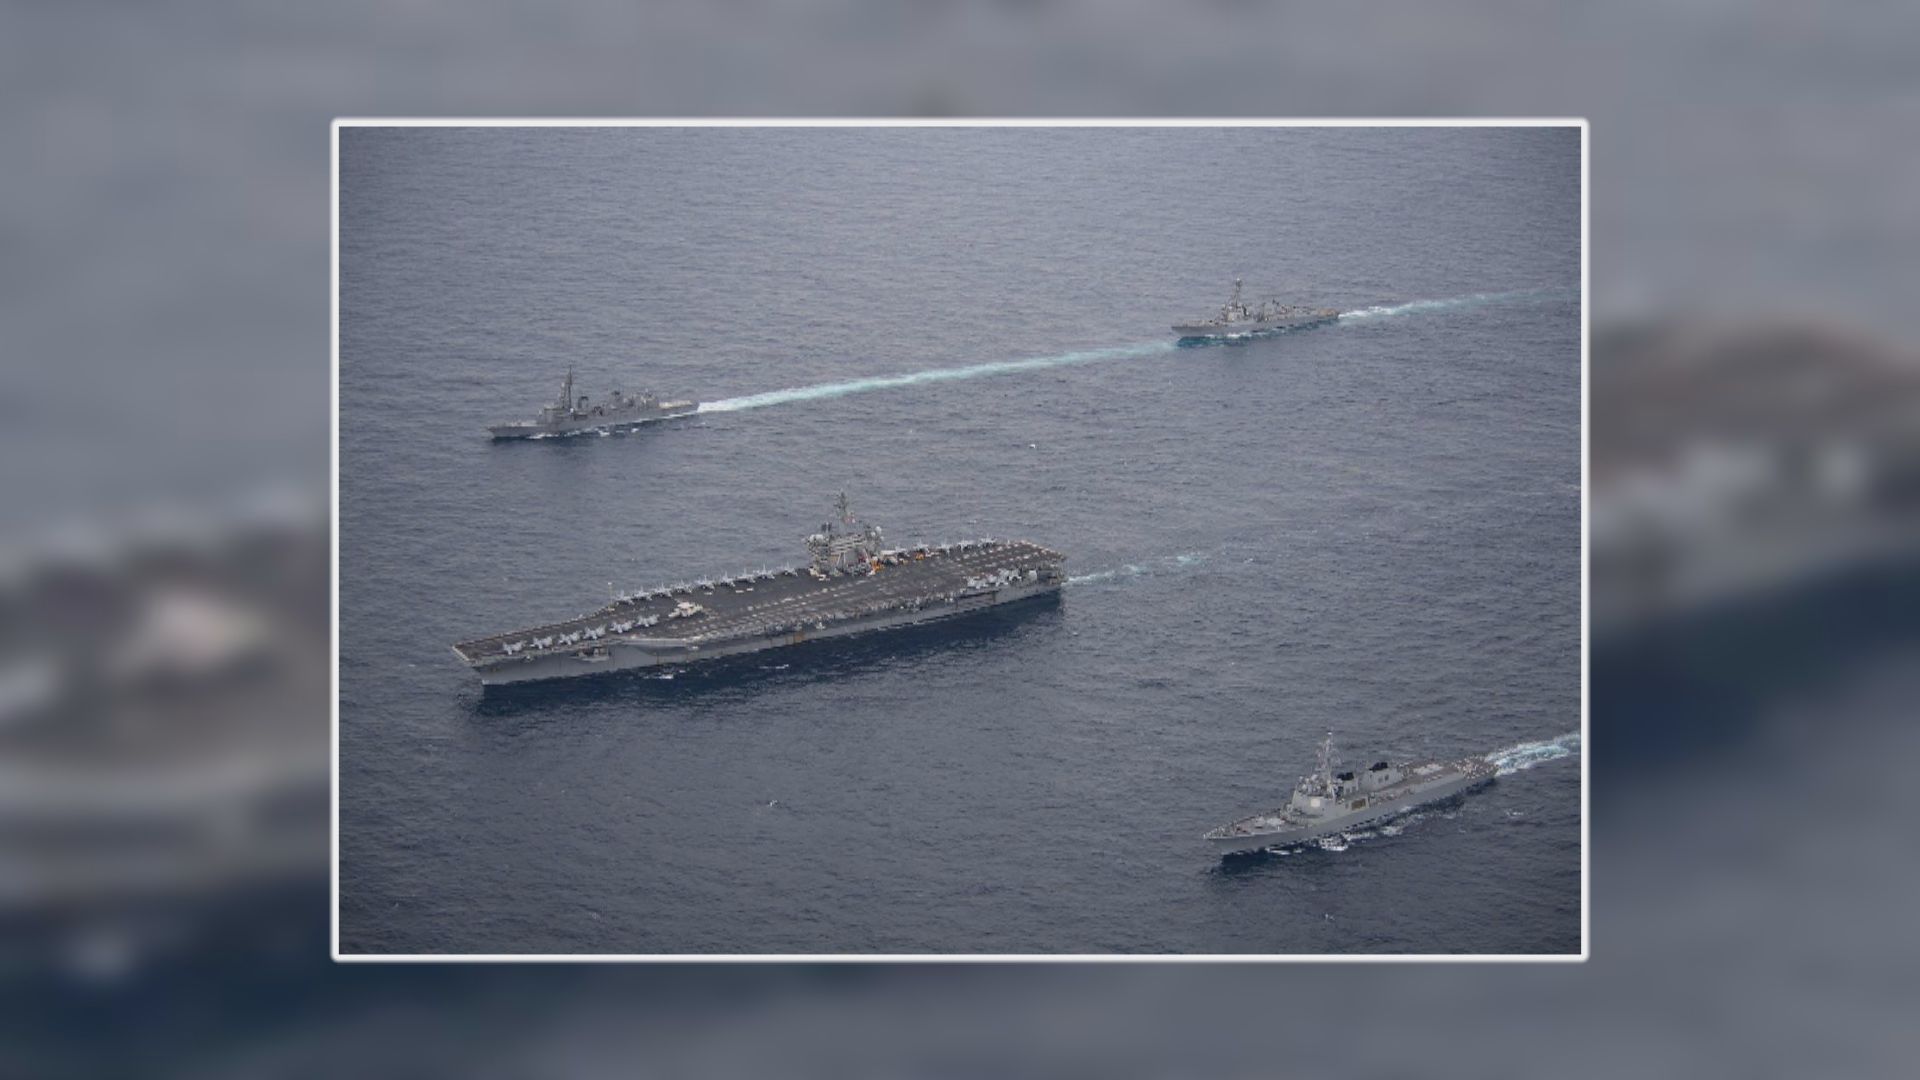 美日韓舉行三國聯合海上演習應對北韓威脅